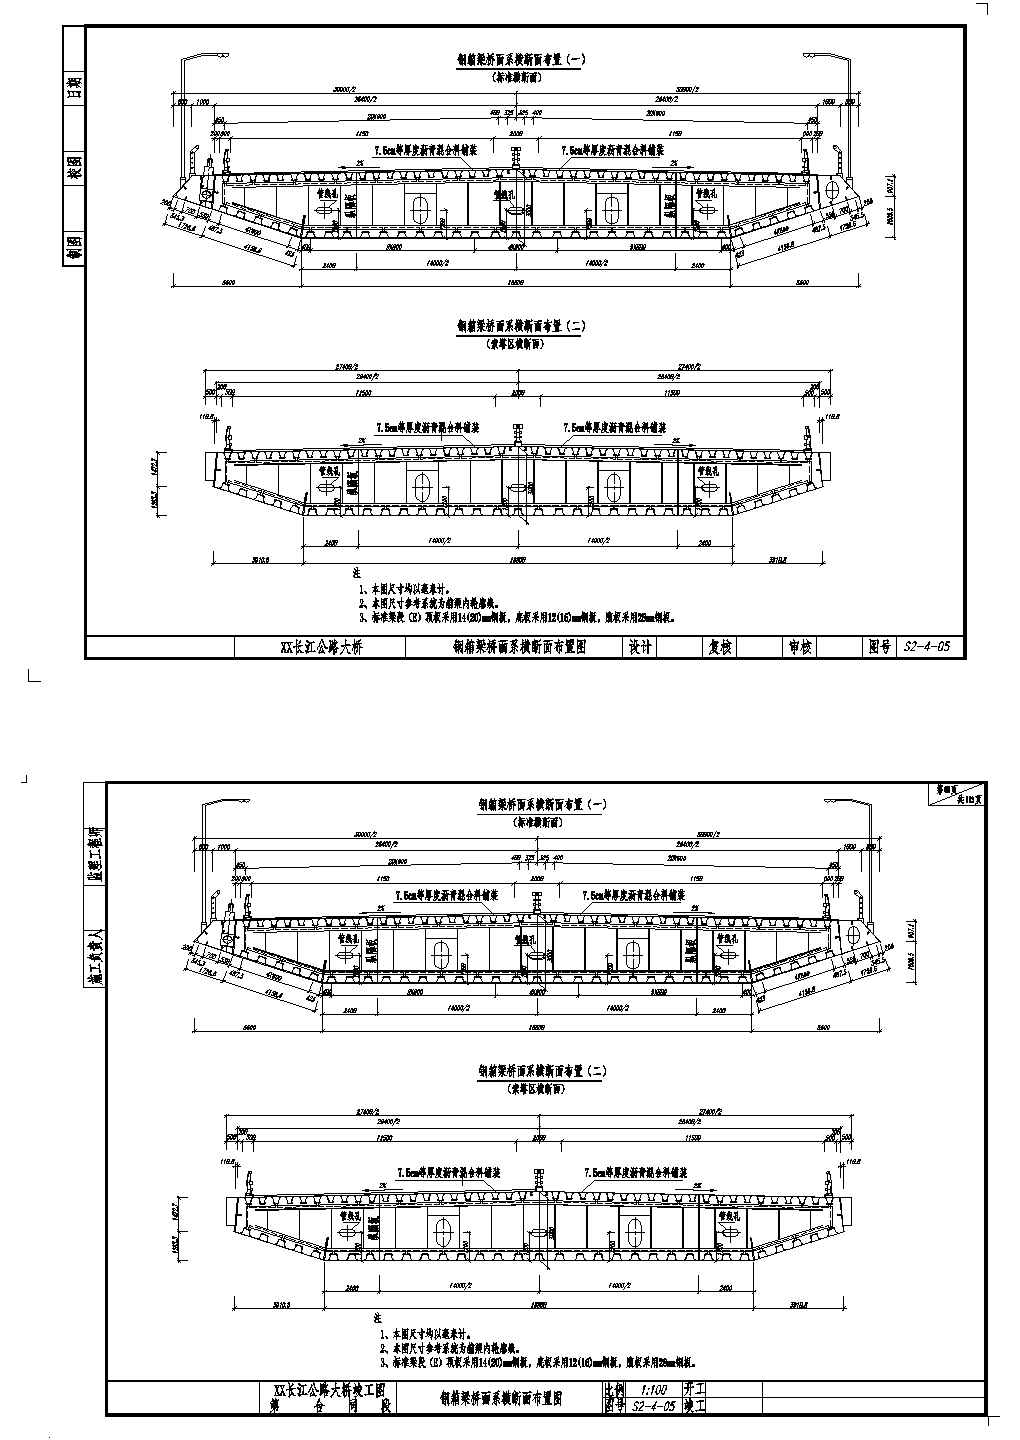 公路跨长江特大组合体系桥梁钢箱梁标准横断面节点详图设计